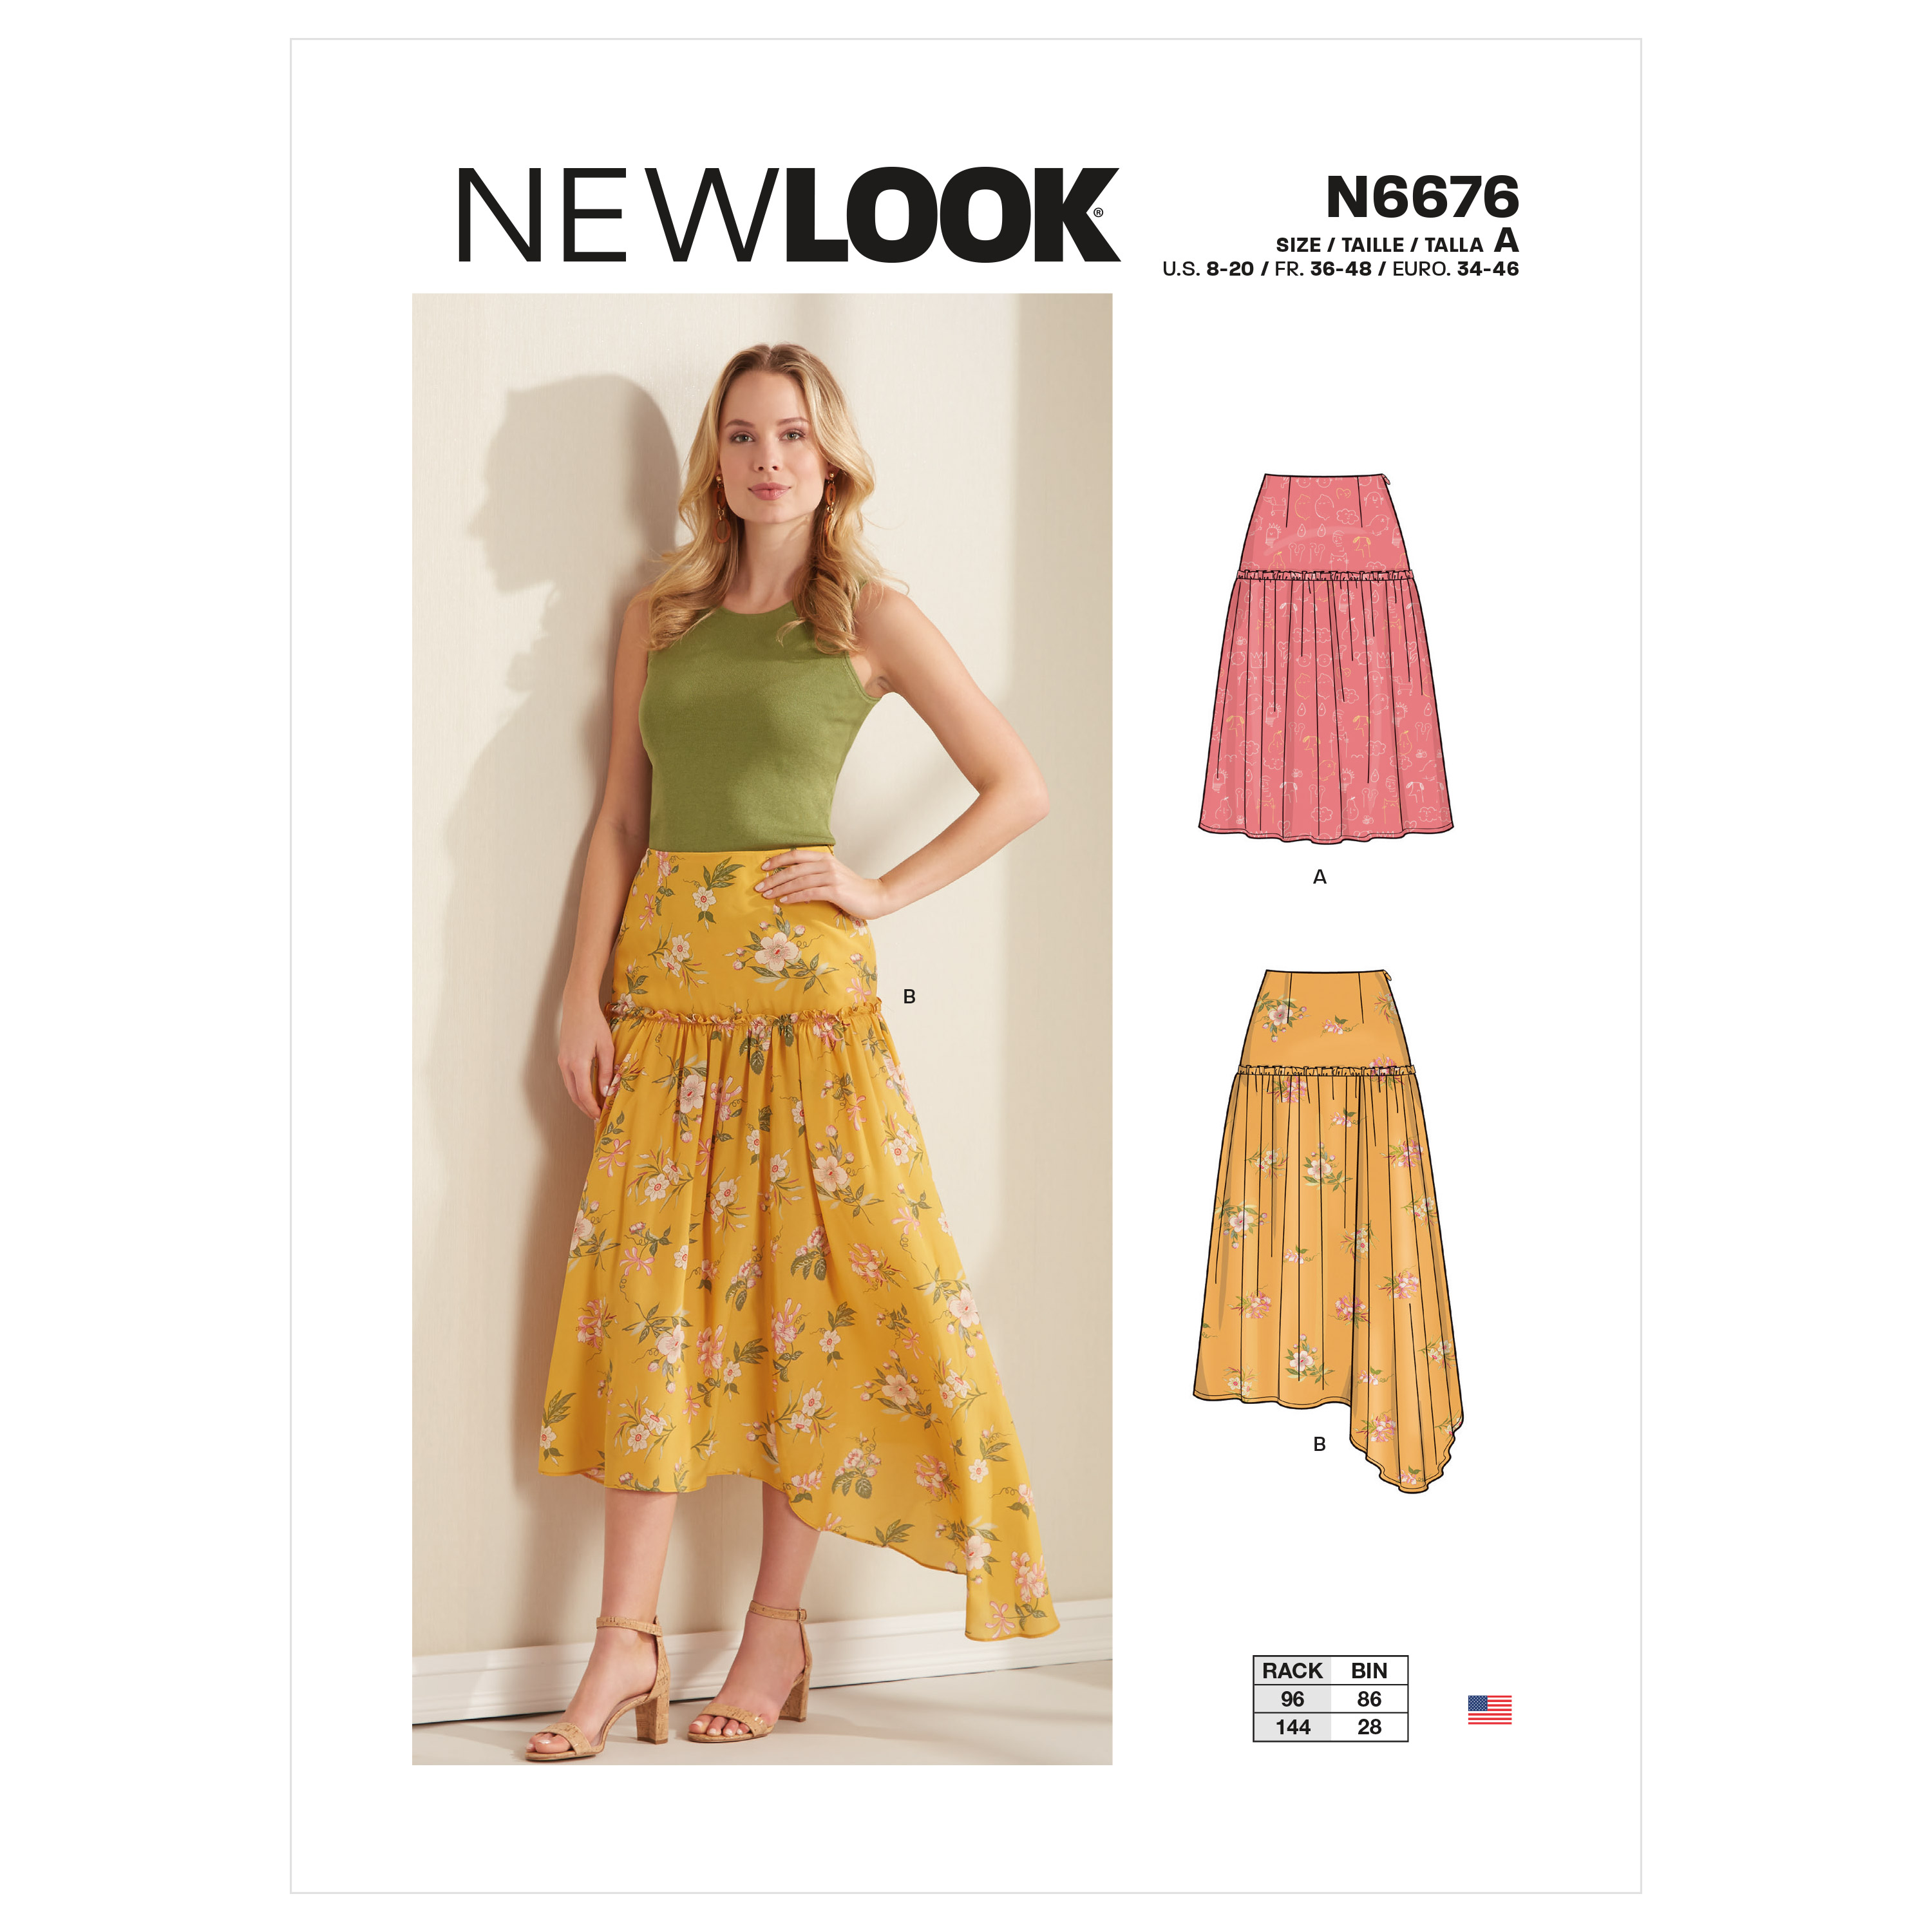 New Look 6676 Misses' Skirt